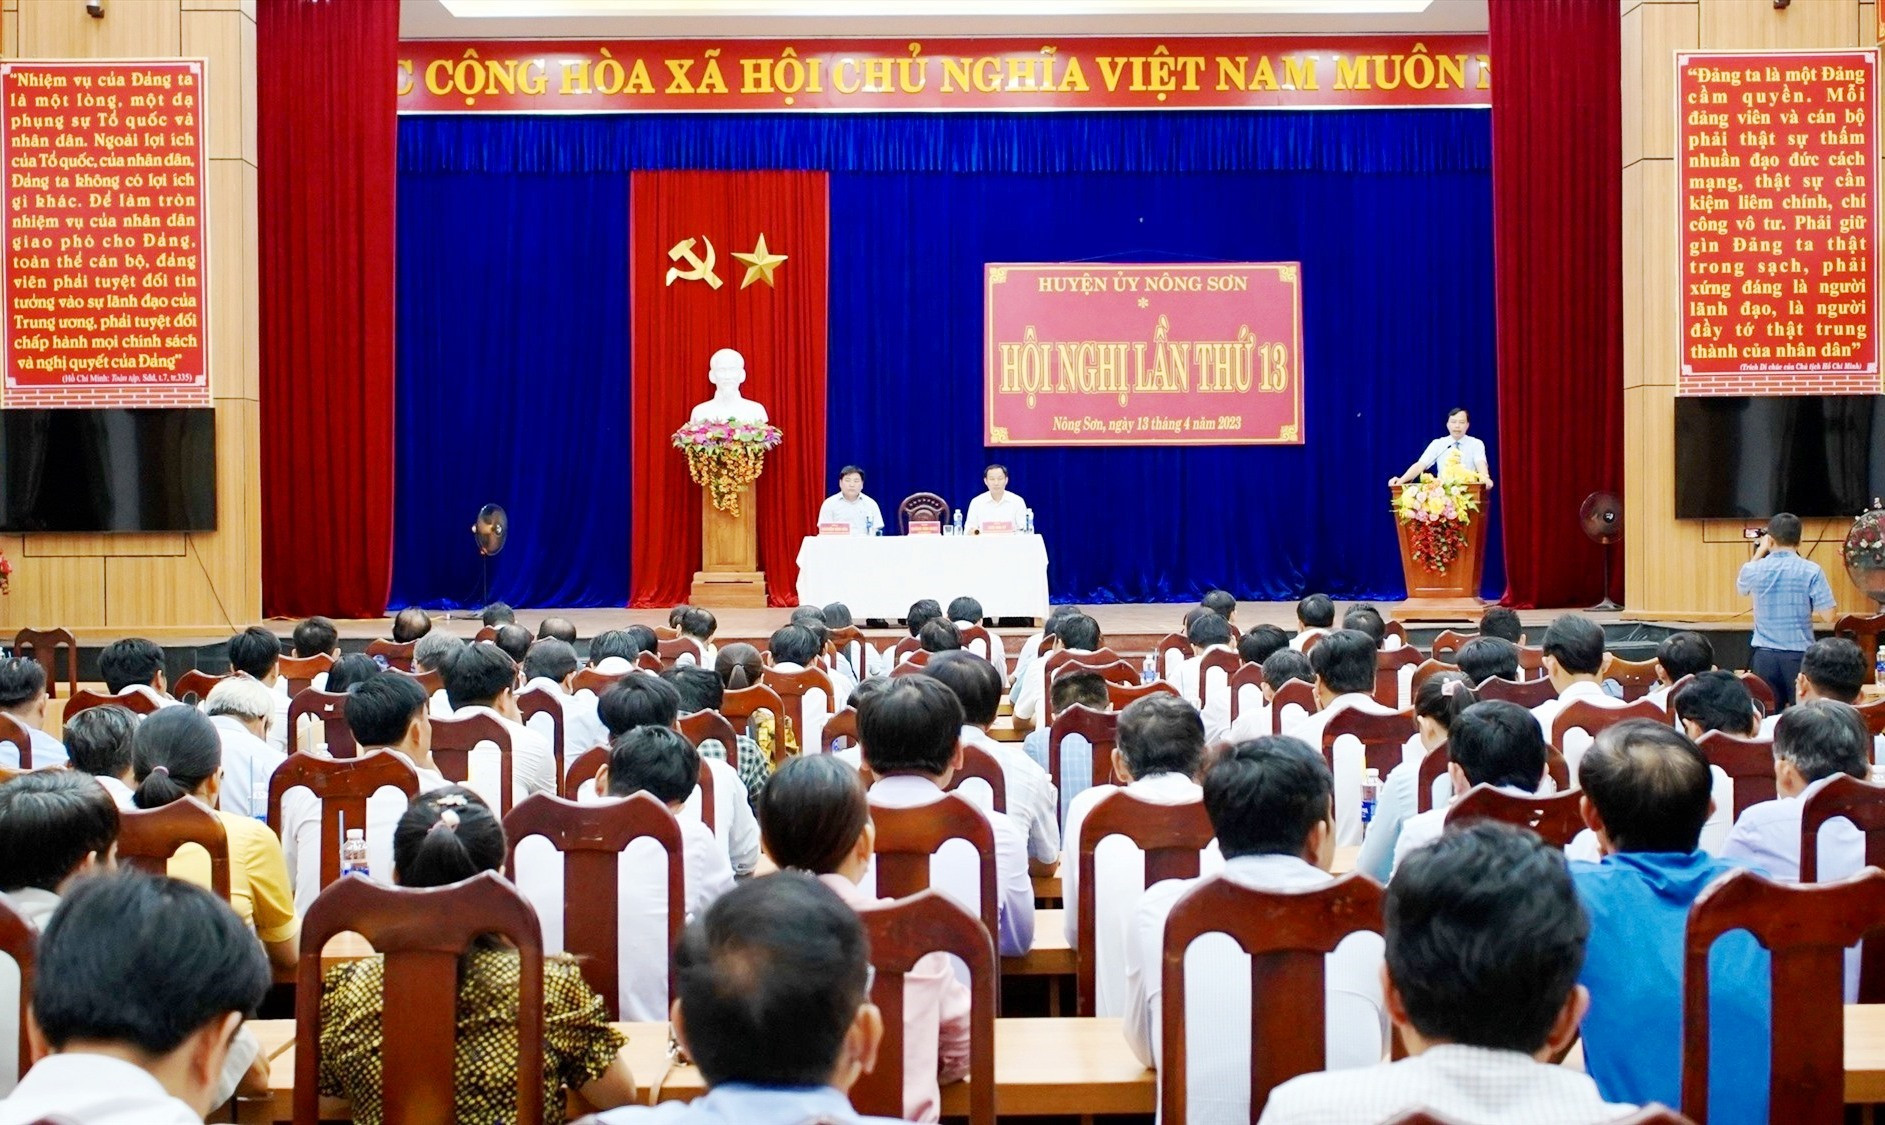 Huyện ủy Nông Sơn tổ chức hội nghị lần thứ 13 (khóa XXV)